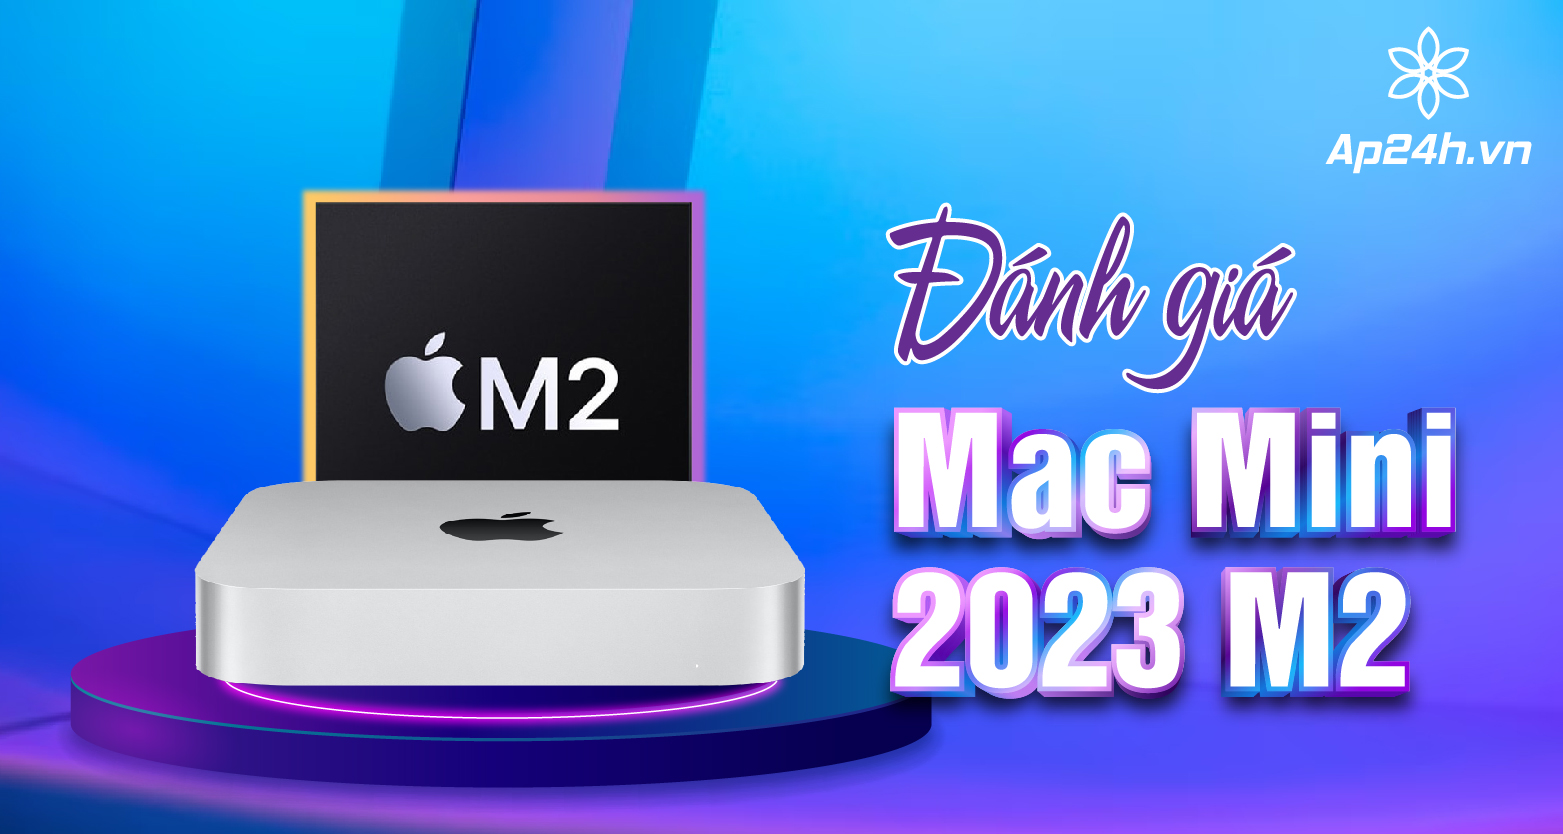  Đánh giá Mac Mini 2023 M2